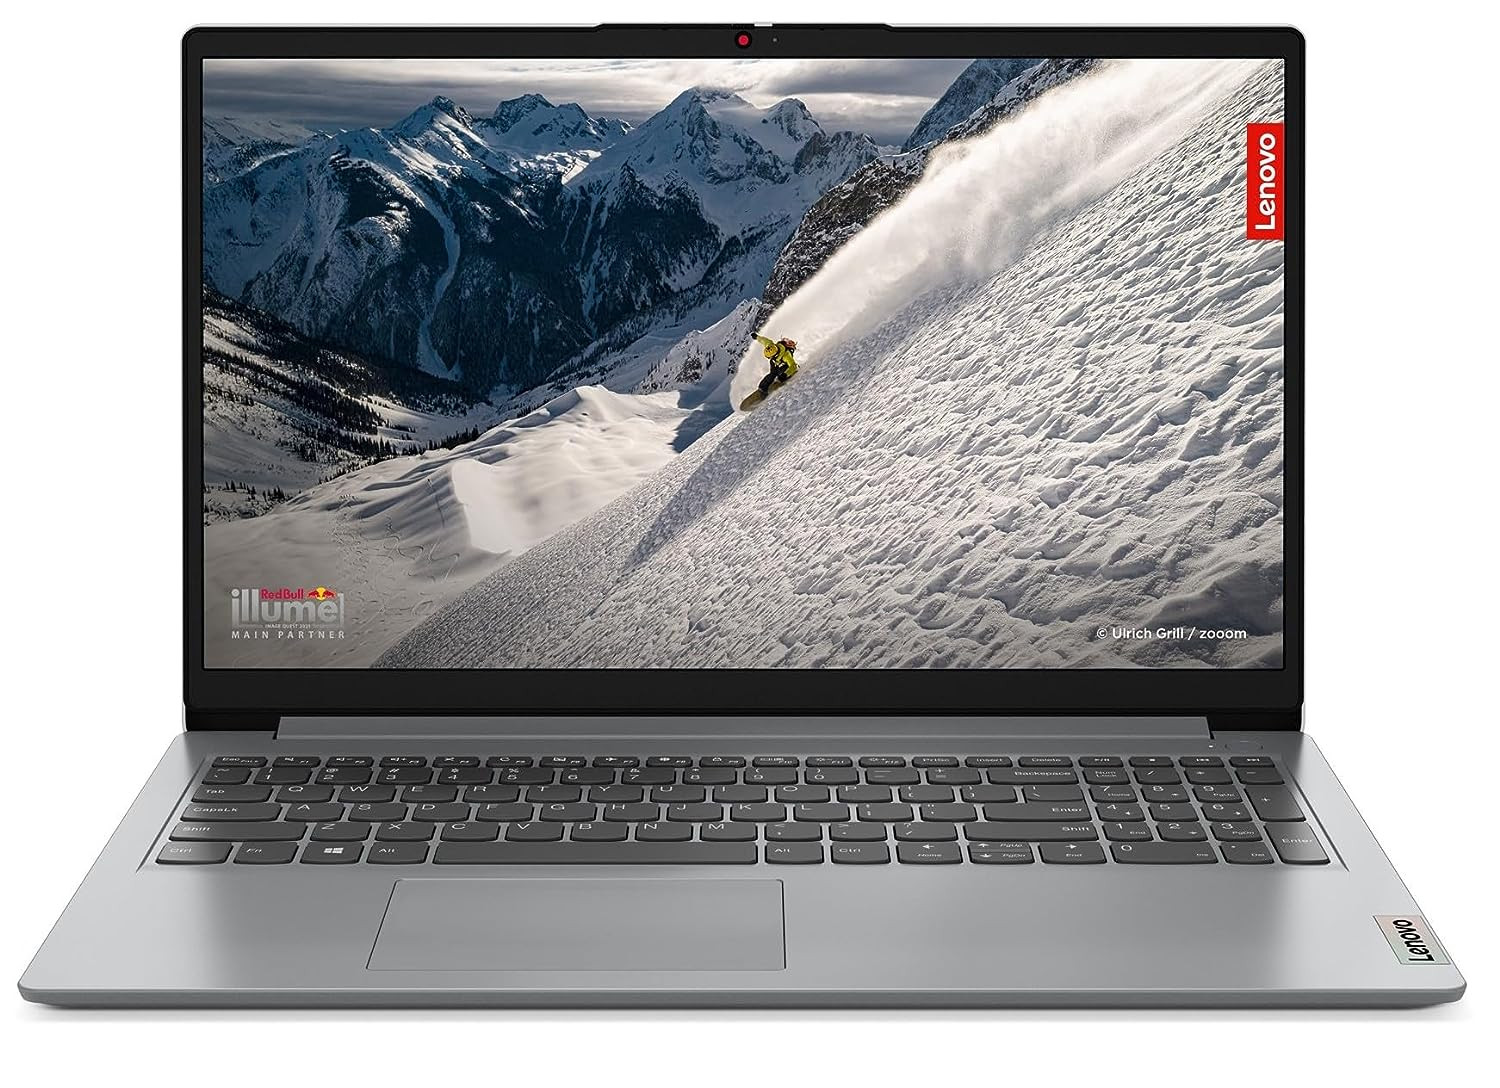 Lenovo IdeaPad 1 AMD Ryzen 5 5500U 156 3962cm FHD Thin  Light Laptop 8GB512GB SSDWindows 11Office 2021Backlit Keyboard1Yr Warranty  1 Yr ADPGrey16Kg 82R400BGIN